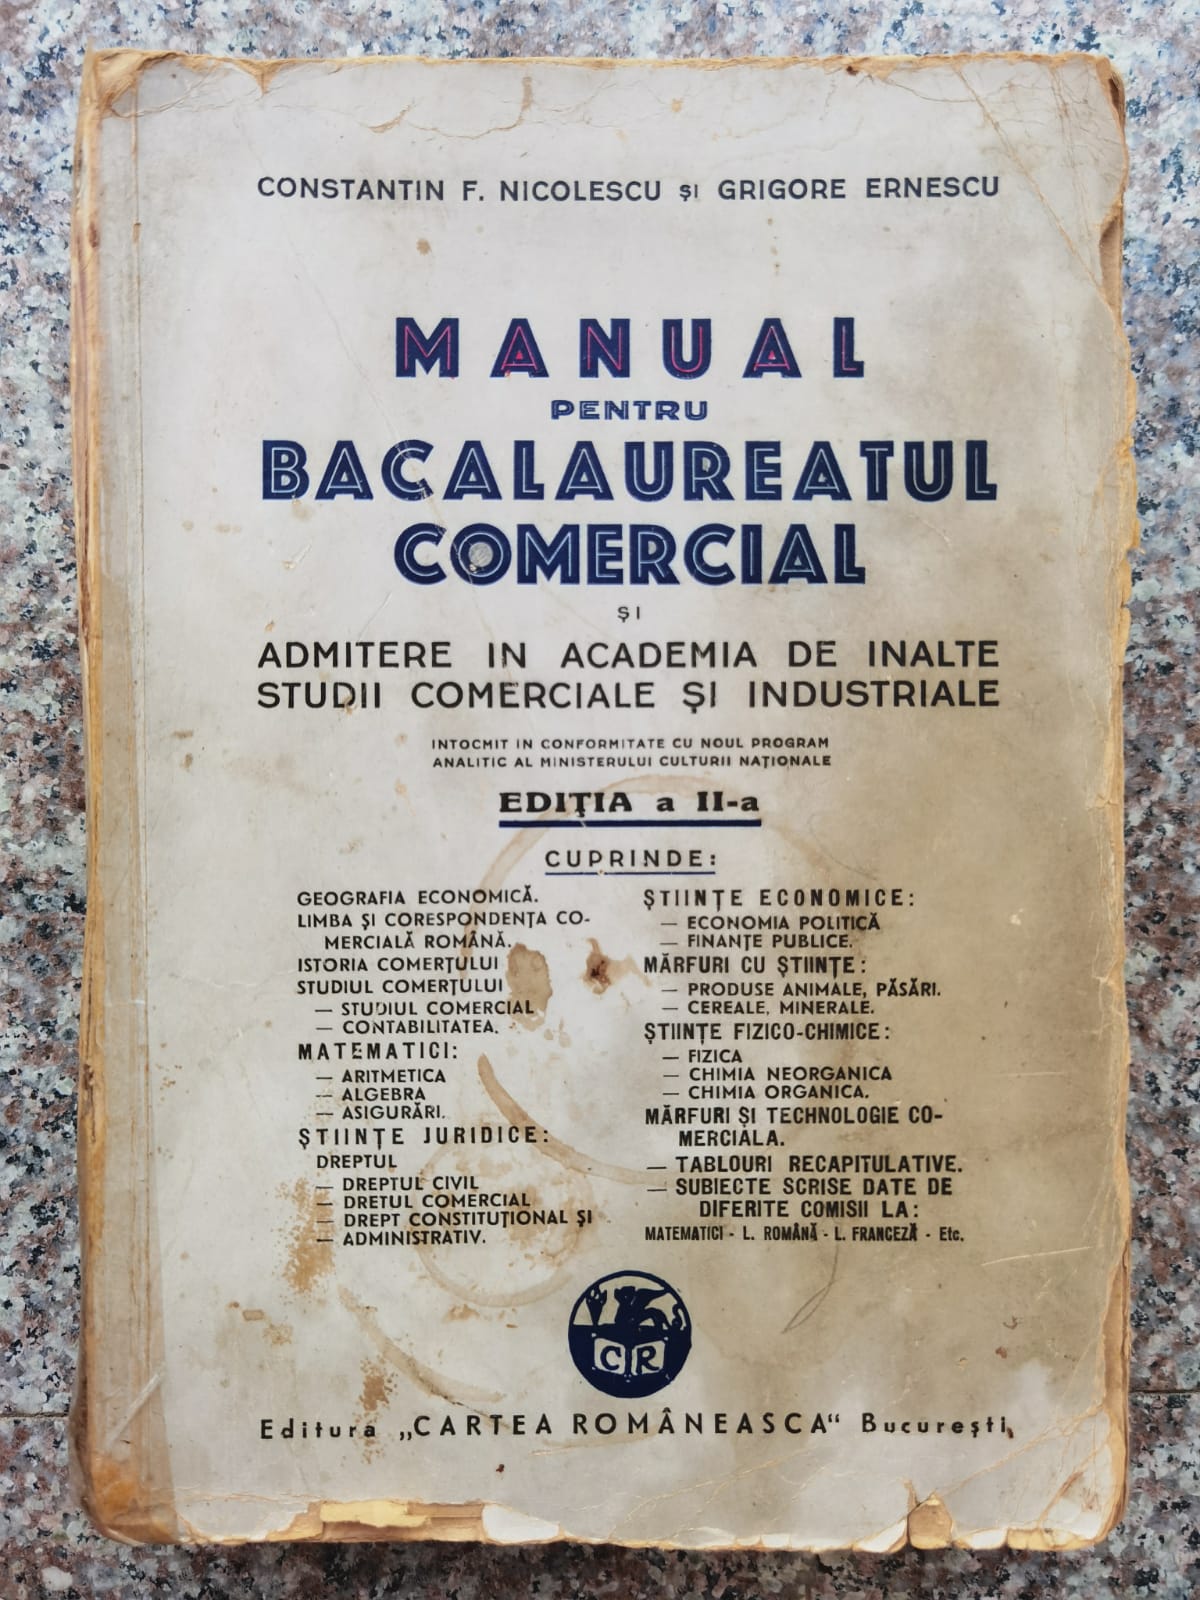 manual pentru bacalaureatul comercial si admitere in academia de inalte studii comerciale            constantin f. nicolescu, grigore ernescu                                                            